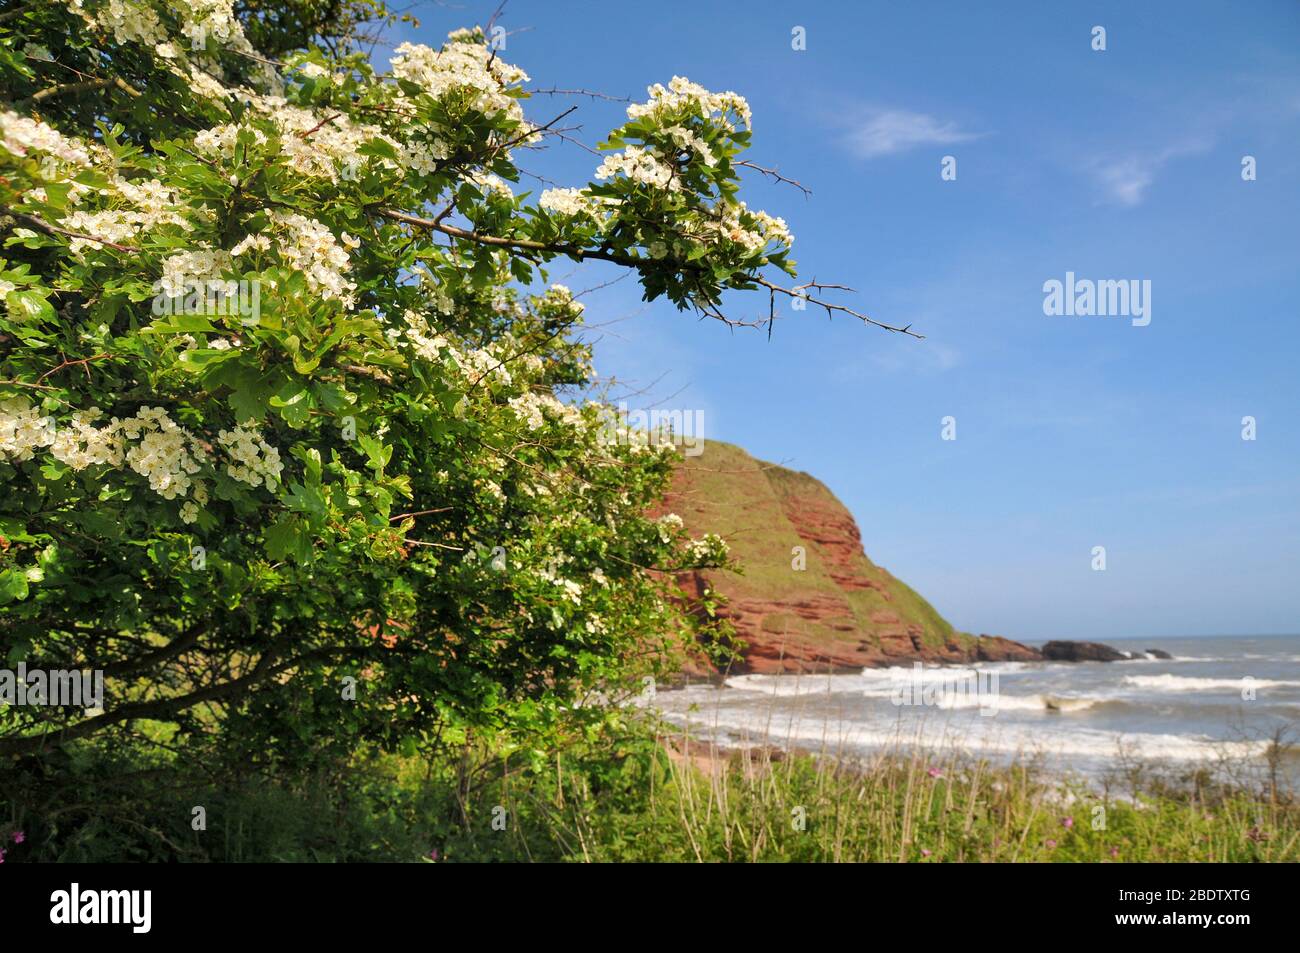 Une section des falaises rouges de l'arborath sanstone au printemps avec un arbre fleuri blanc en premier plan. Banque D'Images